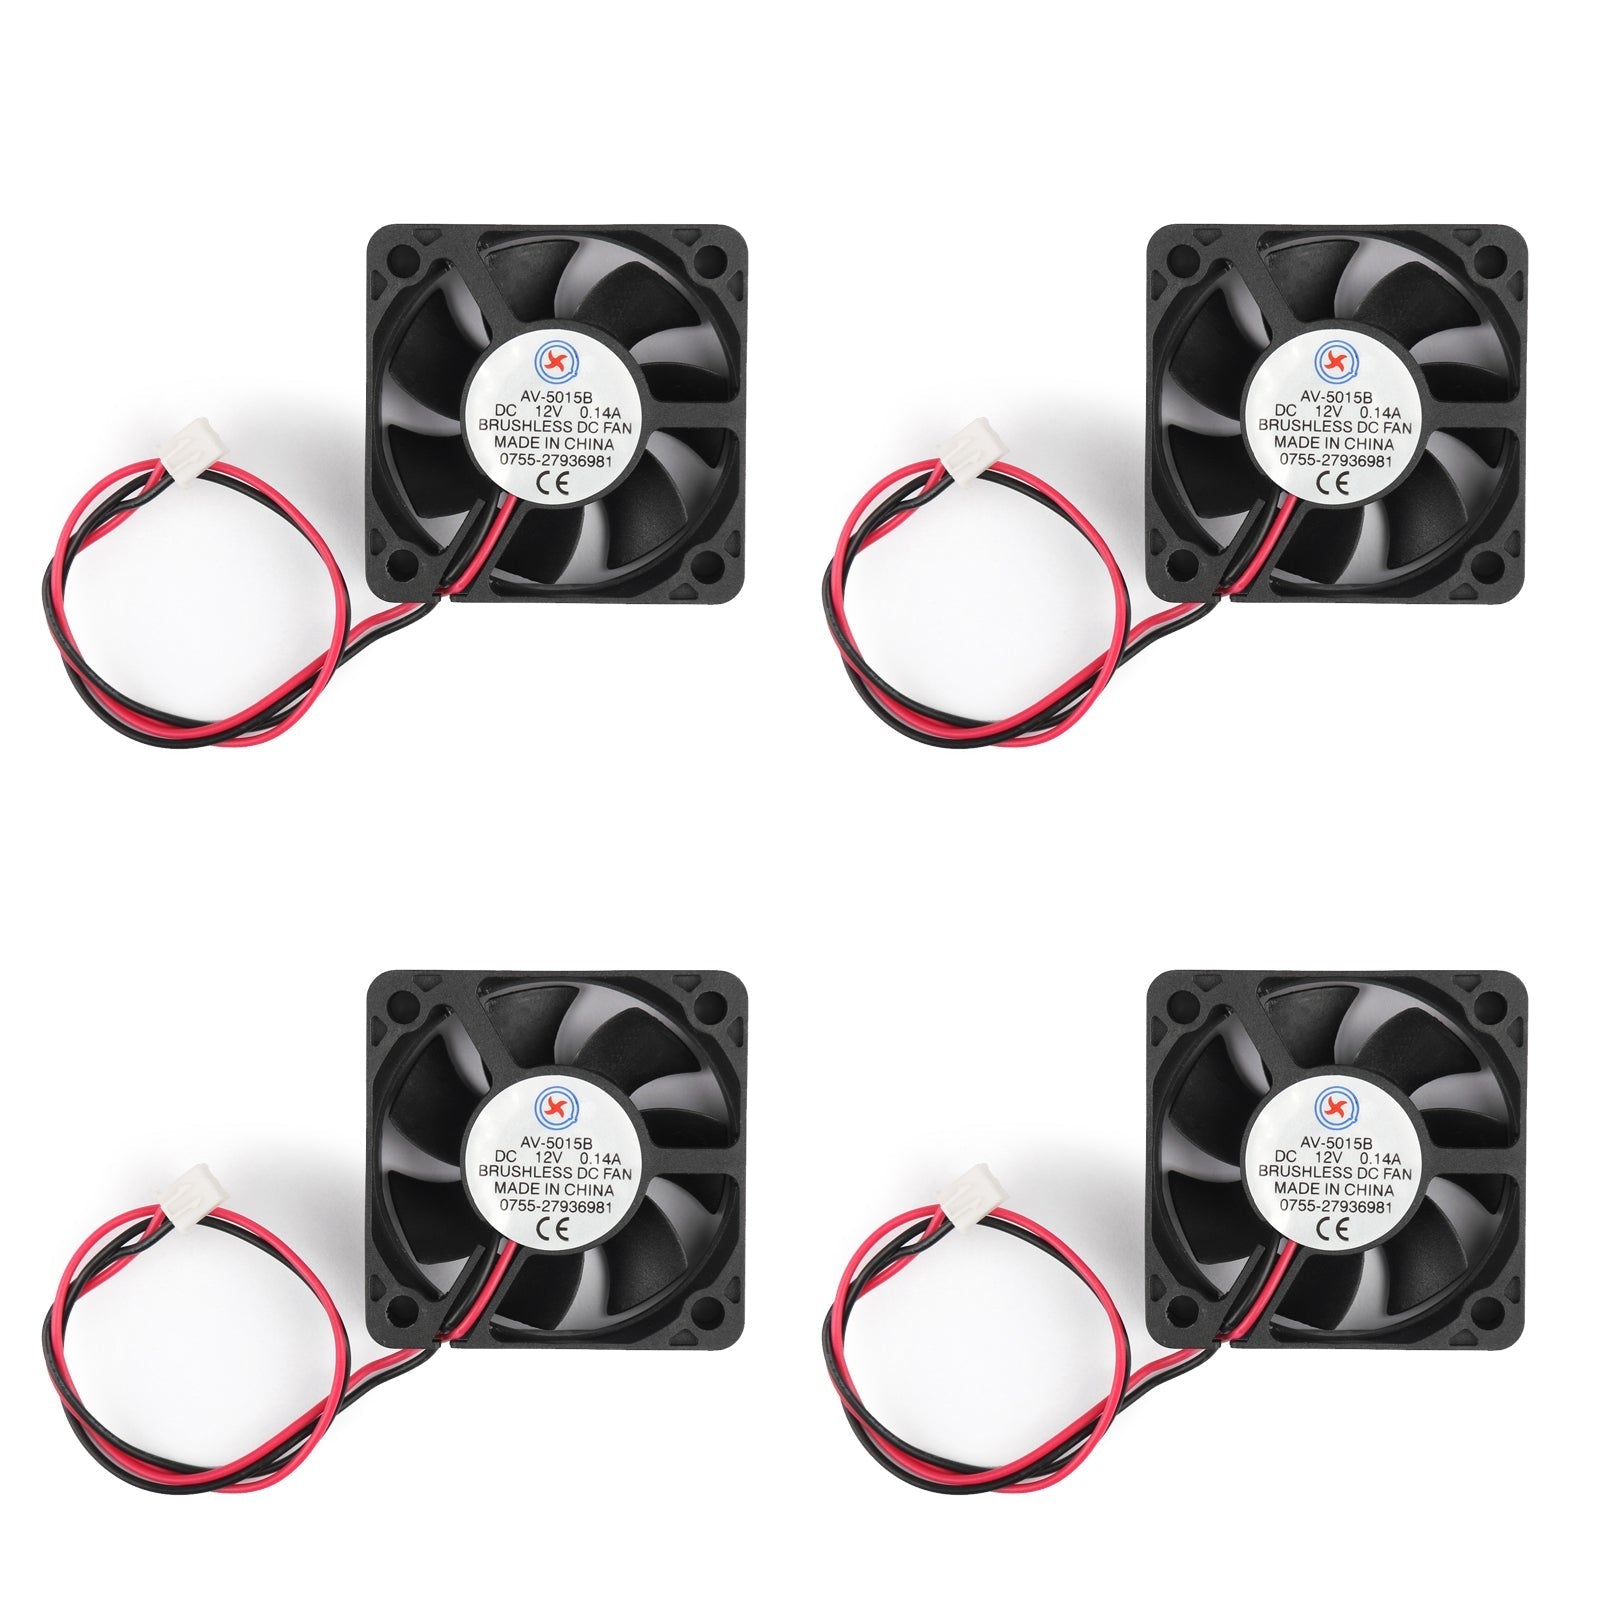 4 pièces DC Brushless refroidissement PC ordinateur ventilateur 12V 5015B 50x50x15mm 0.14A 2 broches fil